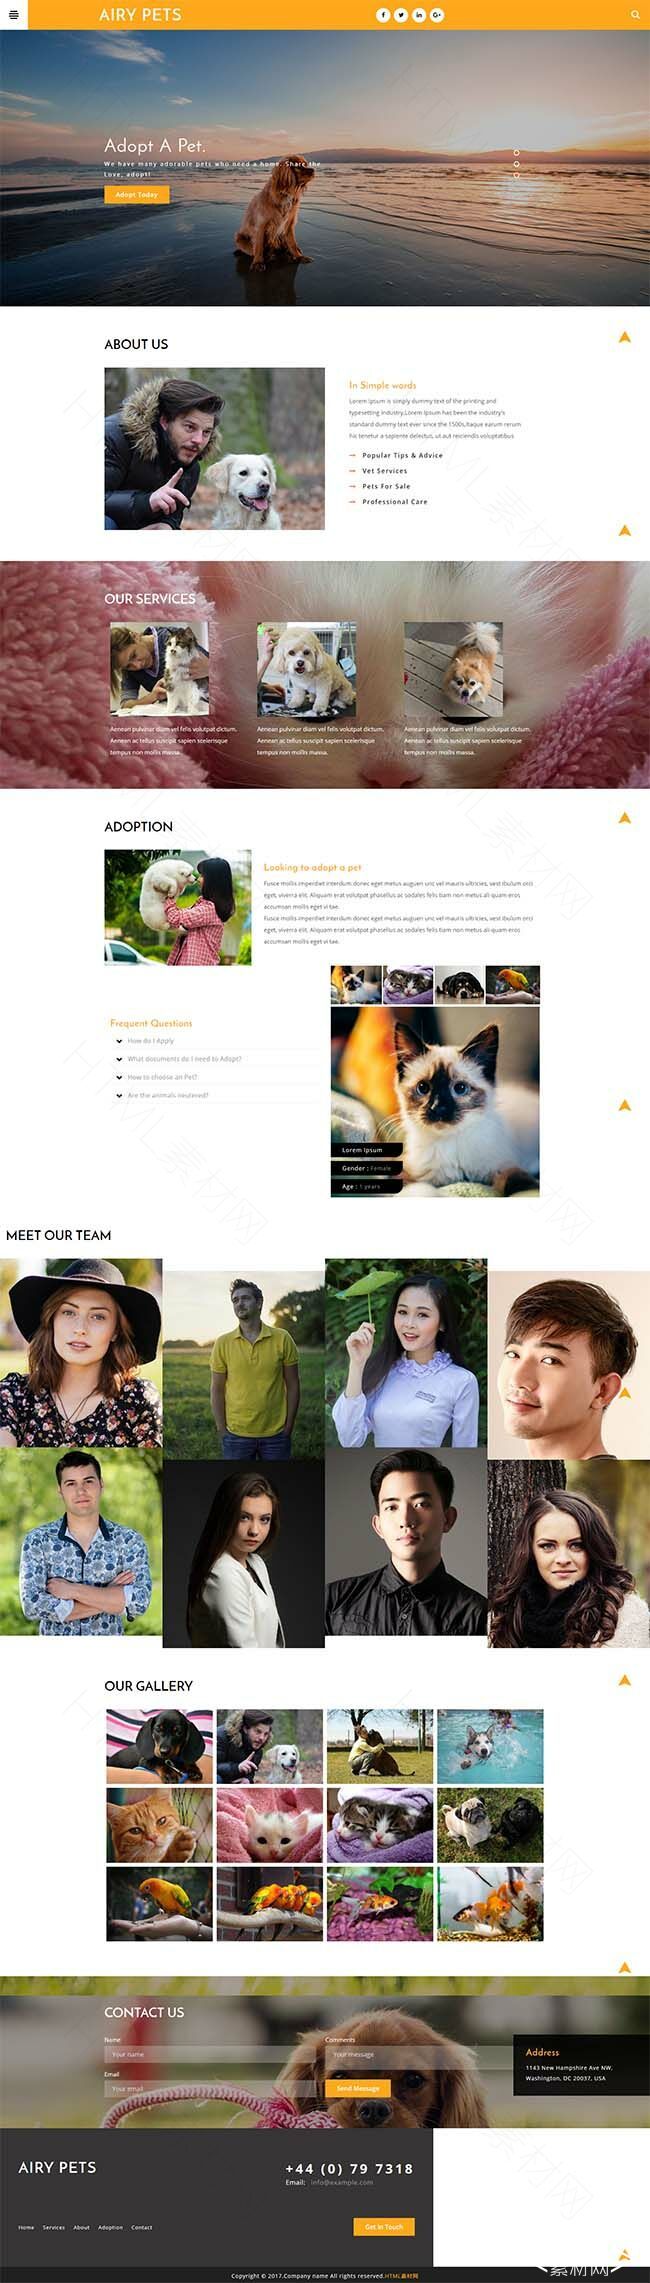 橙色宠物主题响应式网站模板下载- 素材8